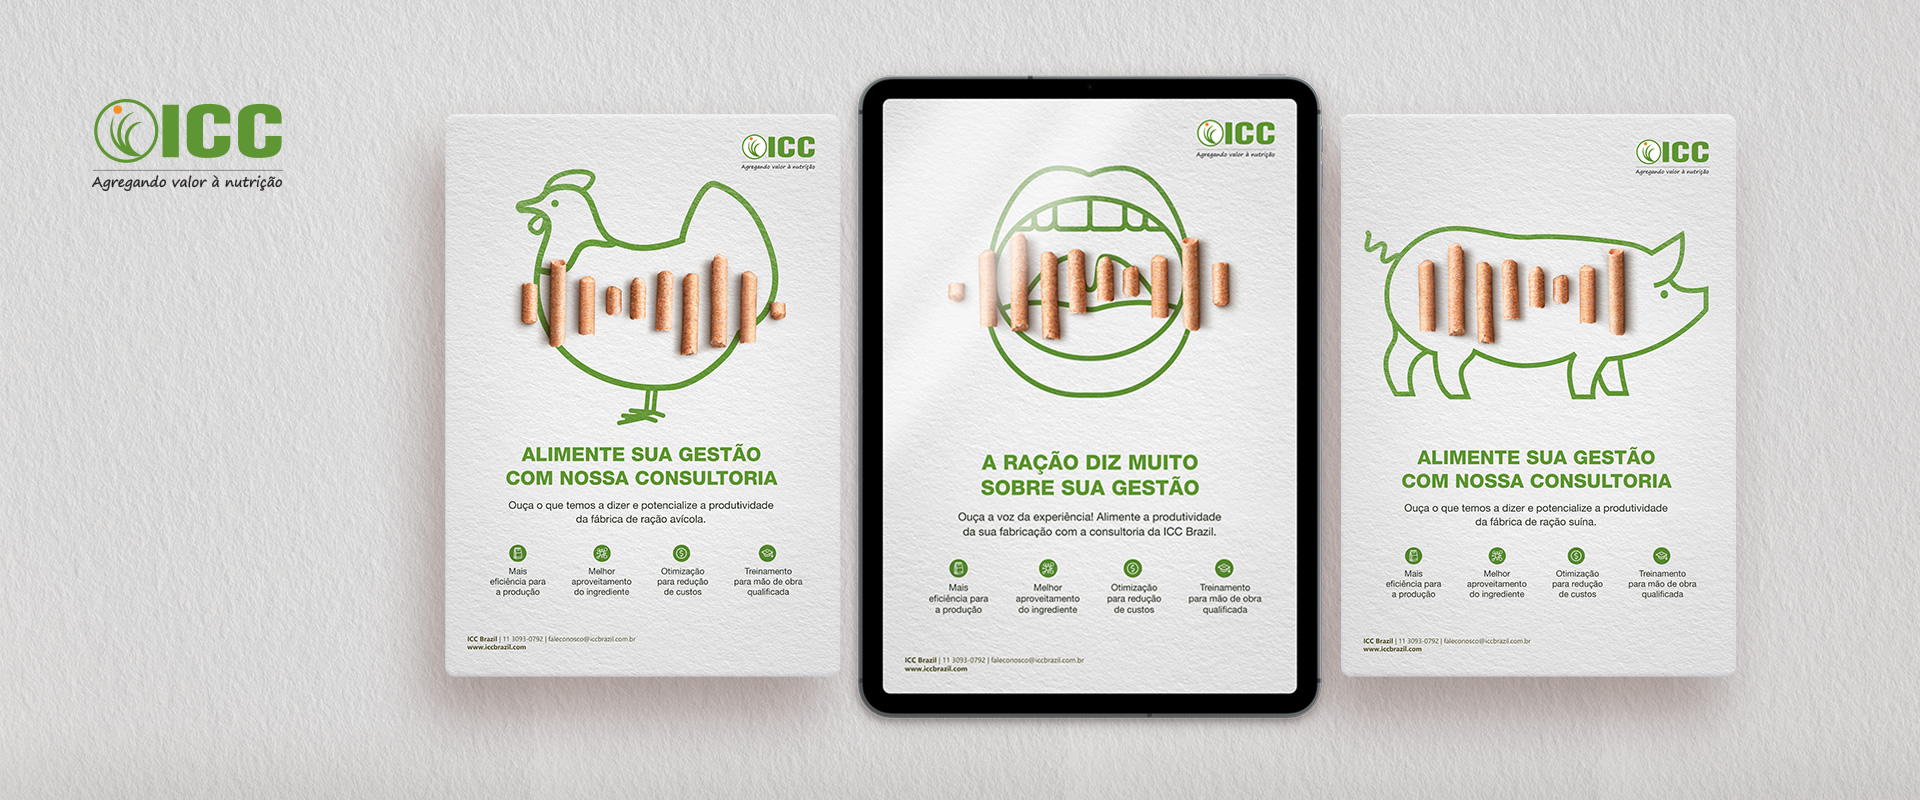 Gestão de marketing digital para um serviço da ICC Brazil.